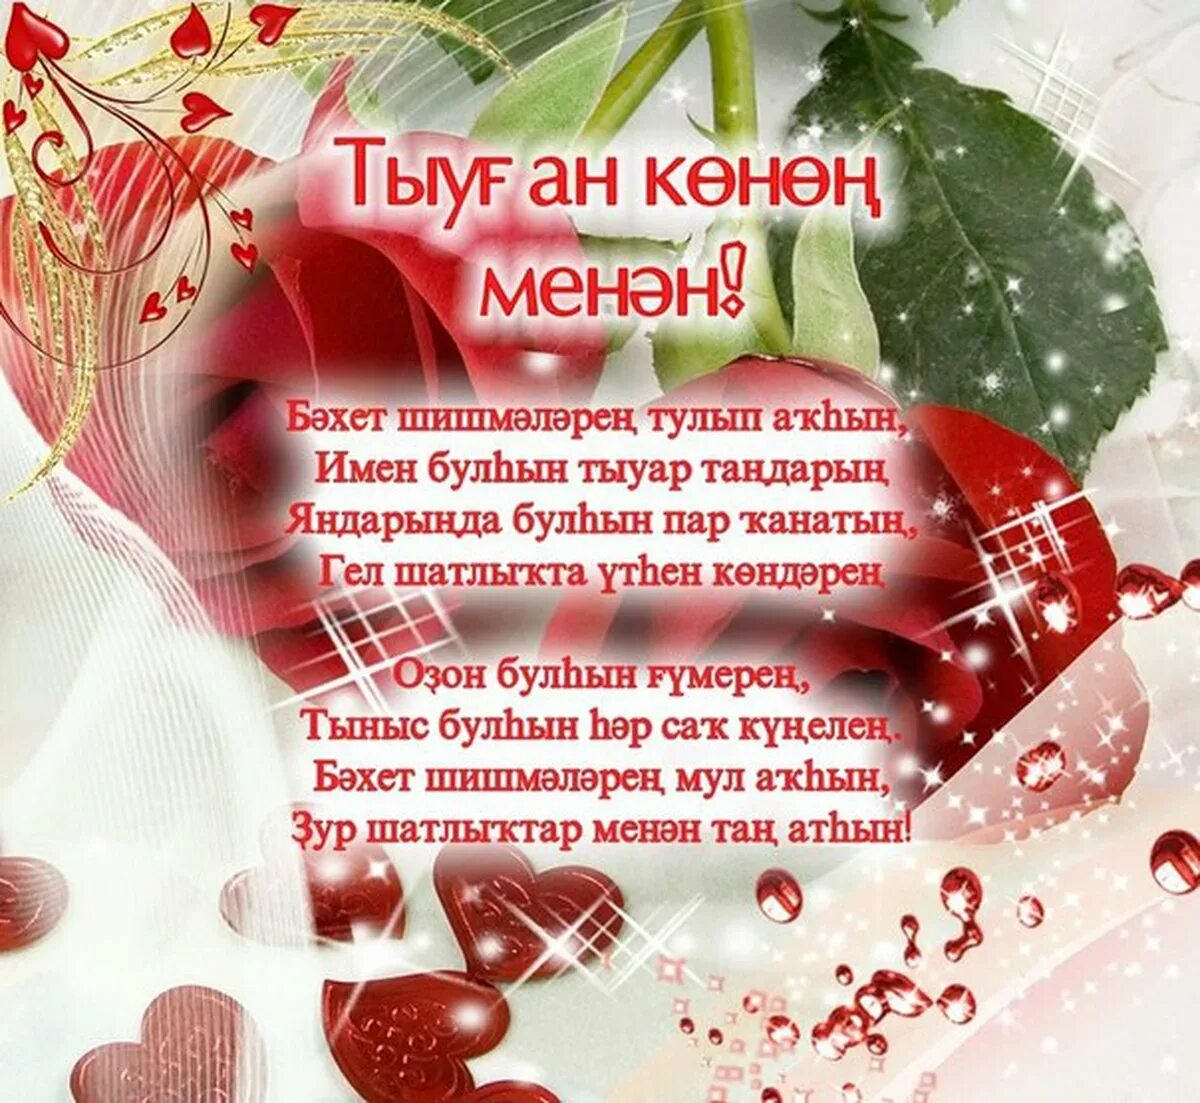 Поздравление на таджикском языке с днем рождения. Открытка с юбилеем на башкирском языке. Поздравления с днём рождения на башкирском языке. Поздравление с юбилеем на башкирском языке. Поздравления с днём на башкирском языке.